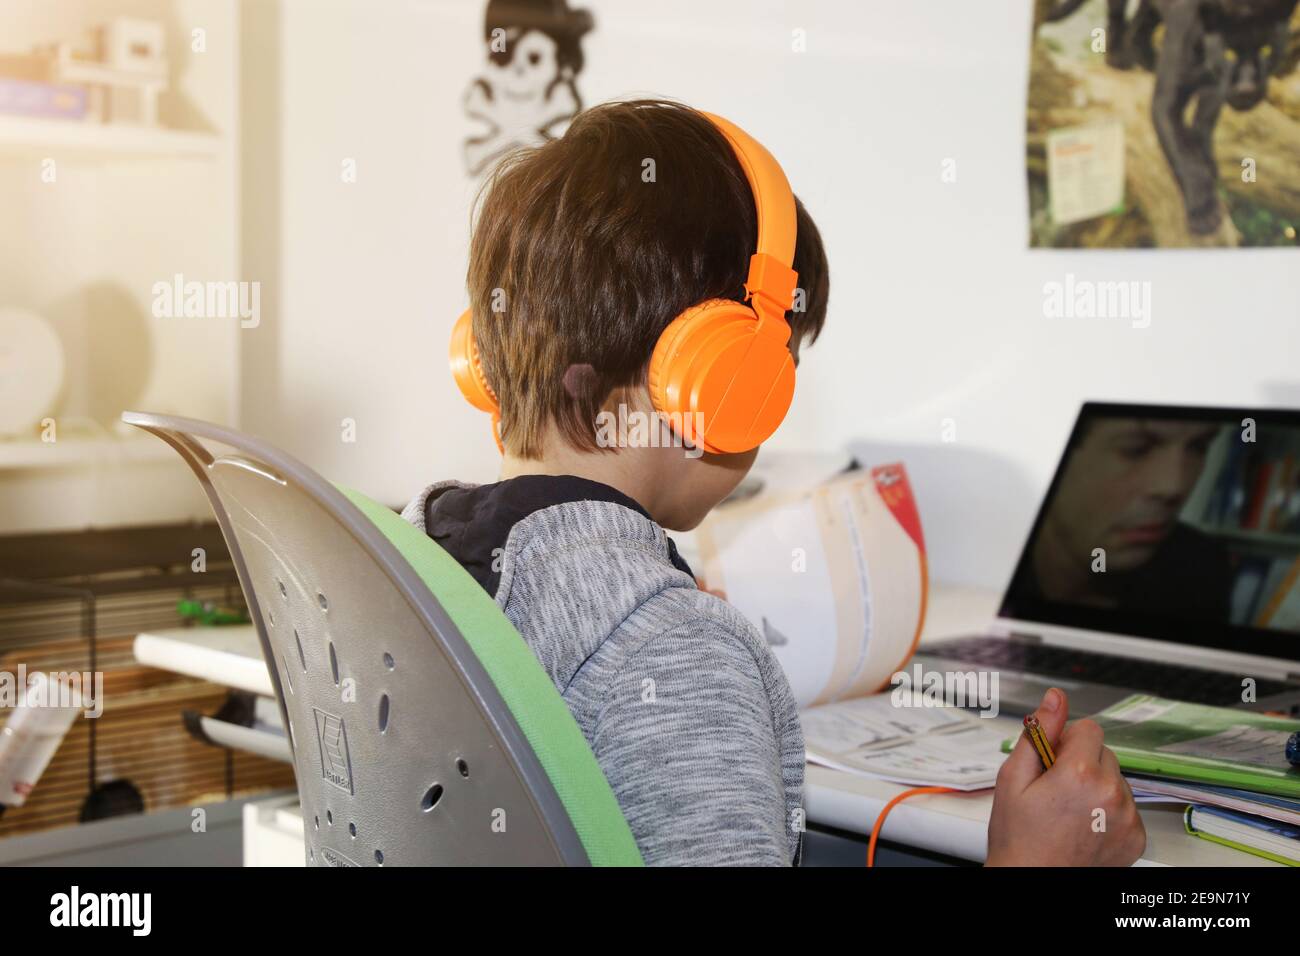 Imagen del símbolo: Estudiante de escuela primaria haciendo homeschooling digital (modelo publicado) Foto de stock